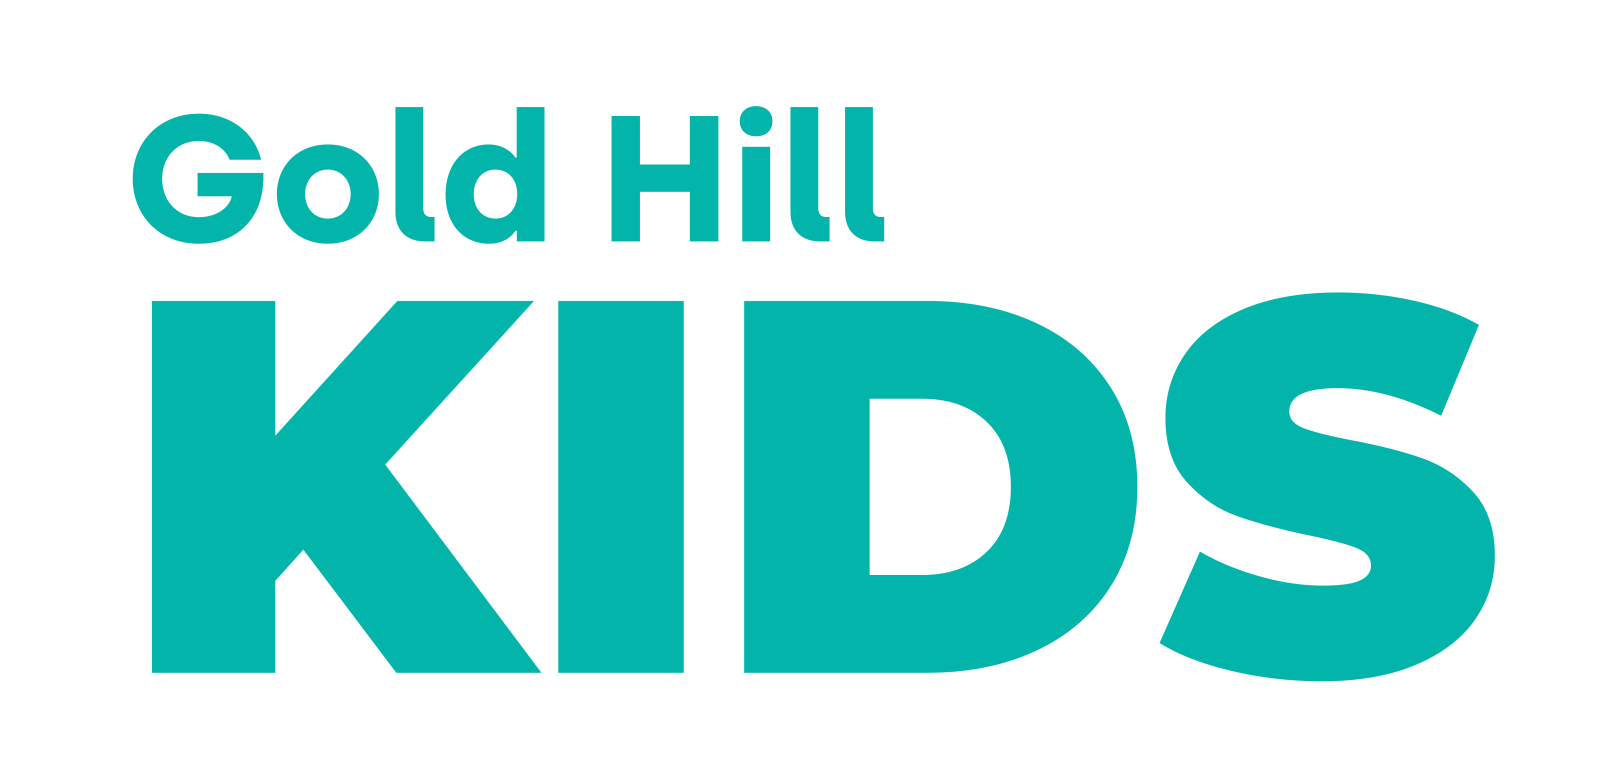 Gold Hill Kids